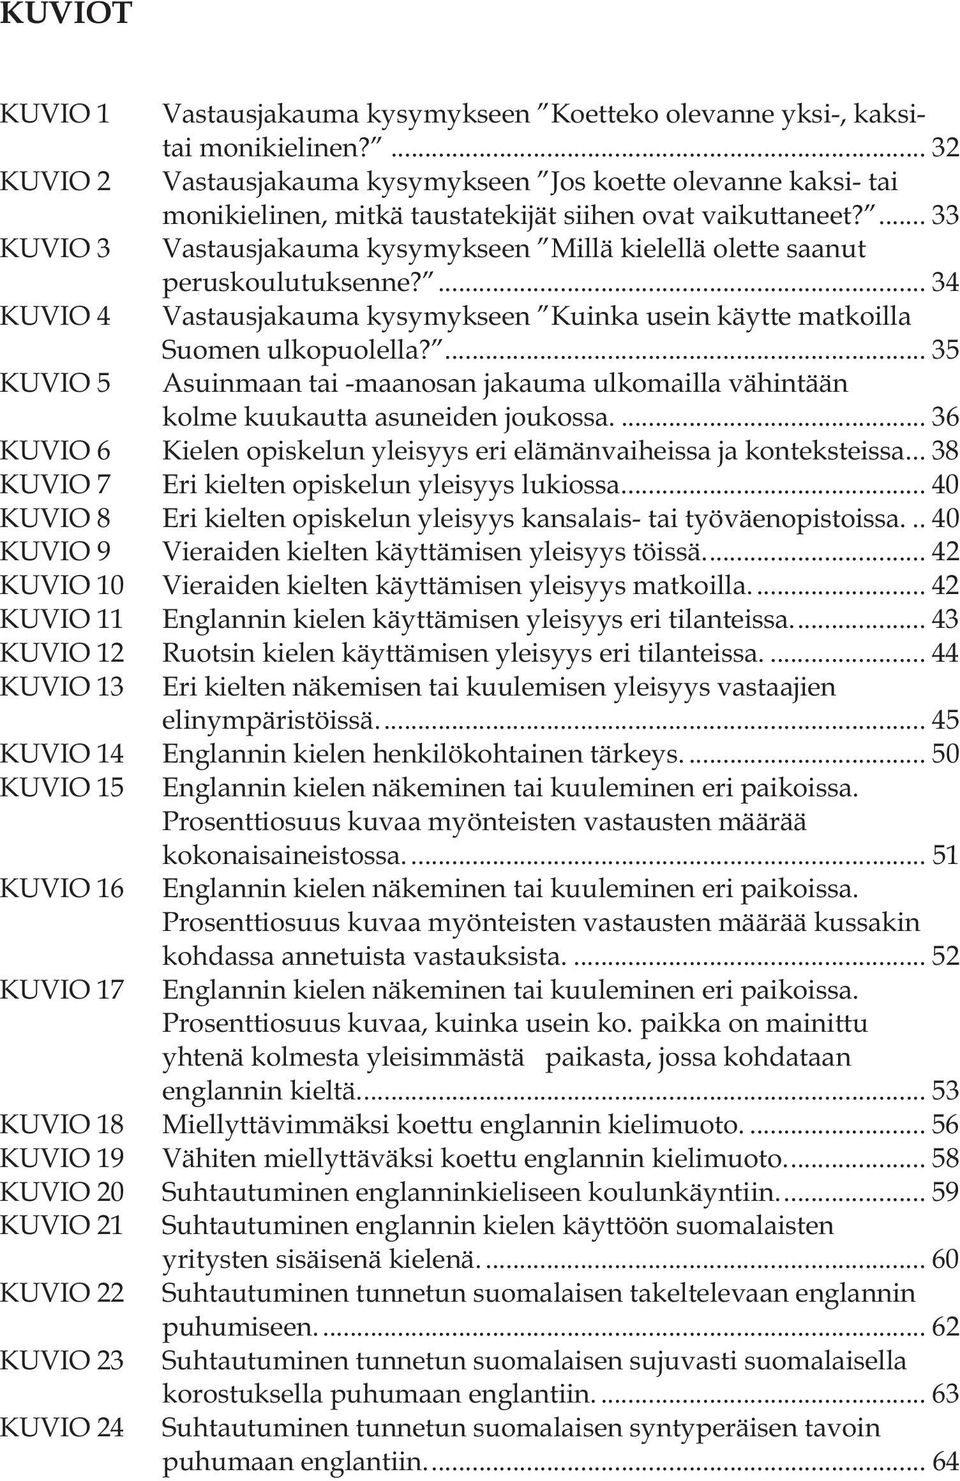 ... 33 KUVIO 3 Vastausjakauma kysymykseen Millä kielellä olette saanut peruskoulutuksenne?... 34 KUVIO 4 Vastausjakauma kysymykseen Kuinka usein käytte matkoilla Suomen ulkopuolella?